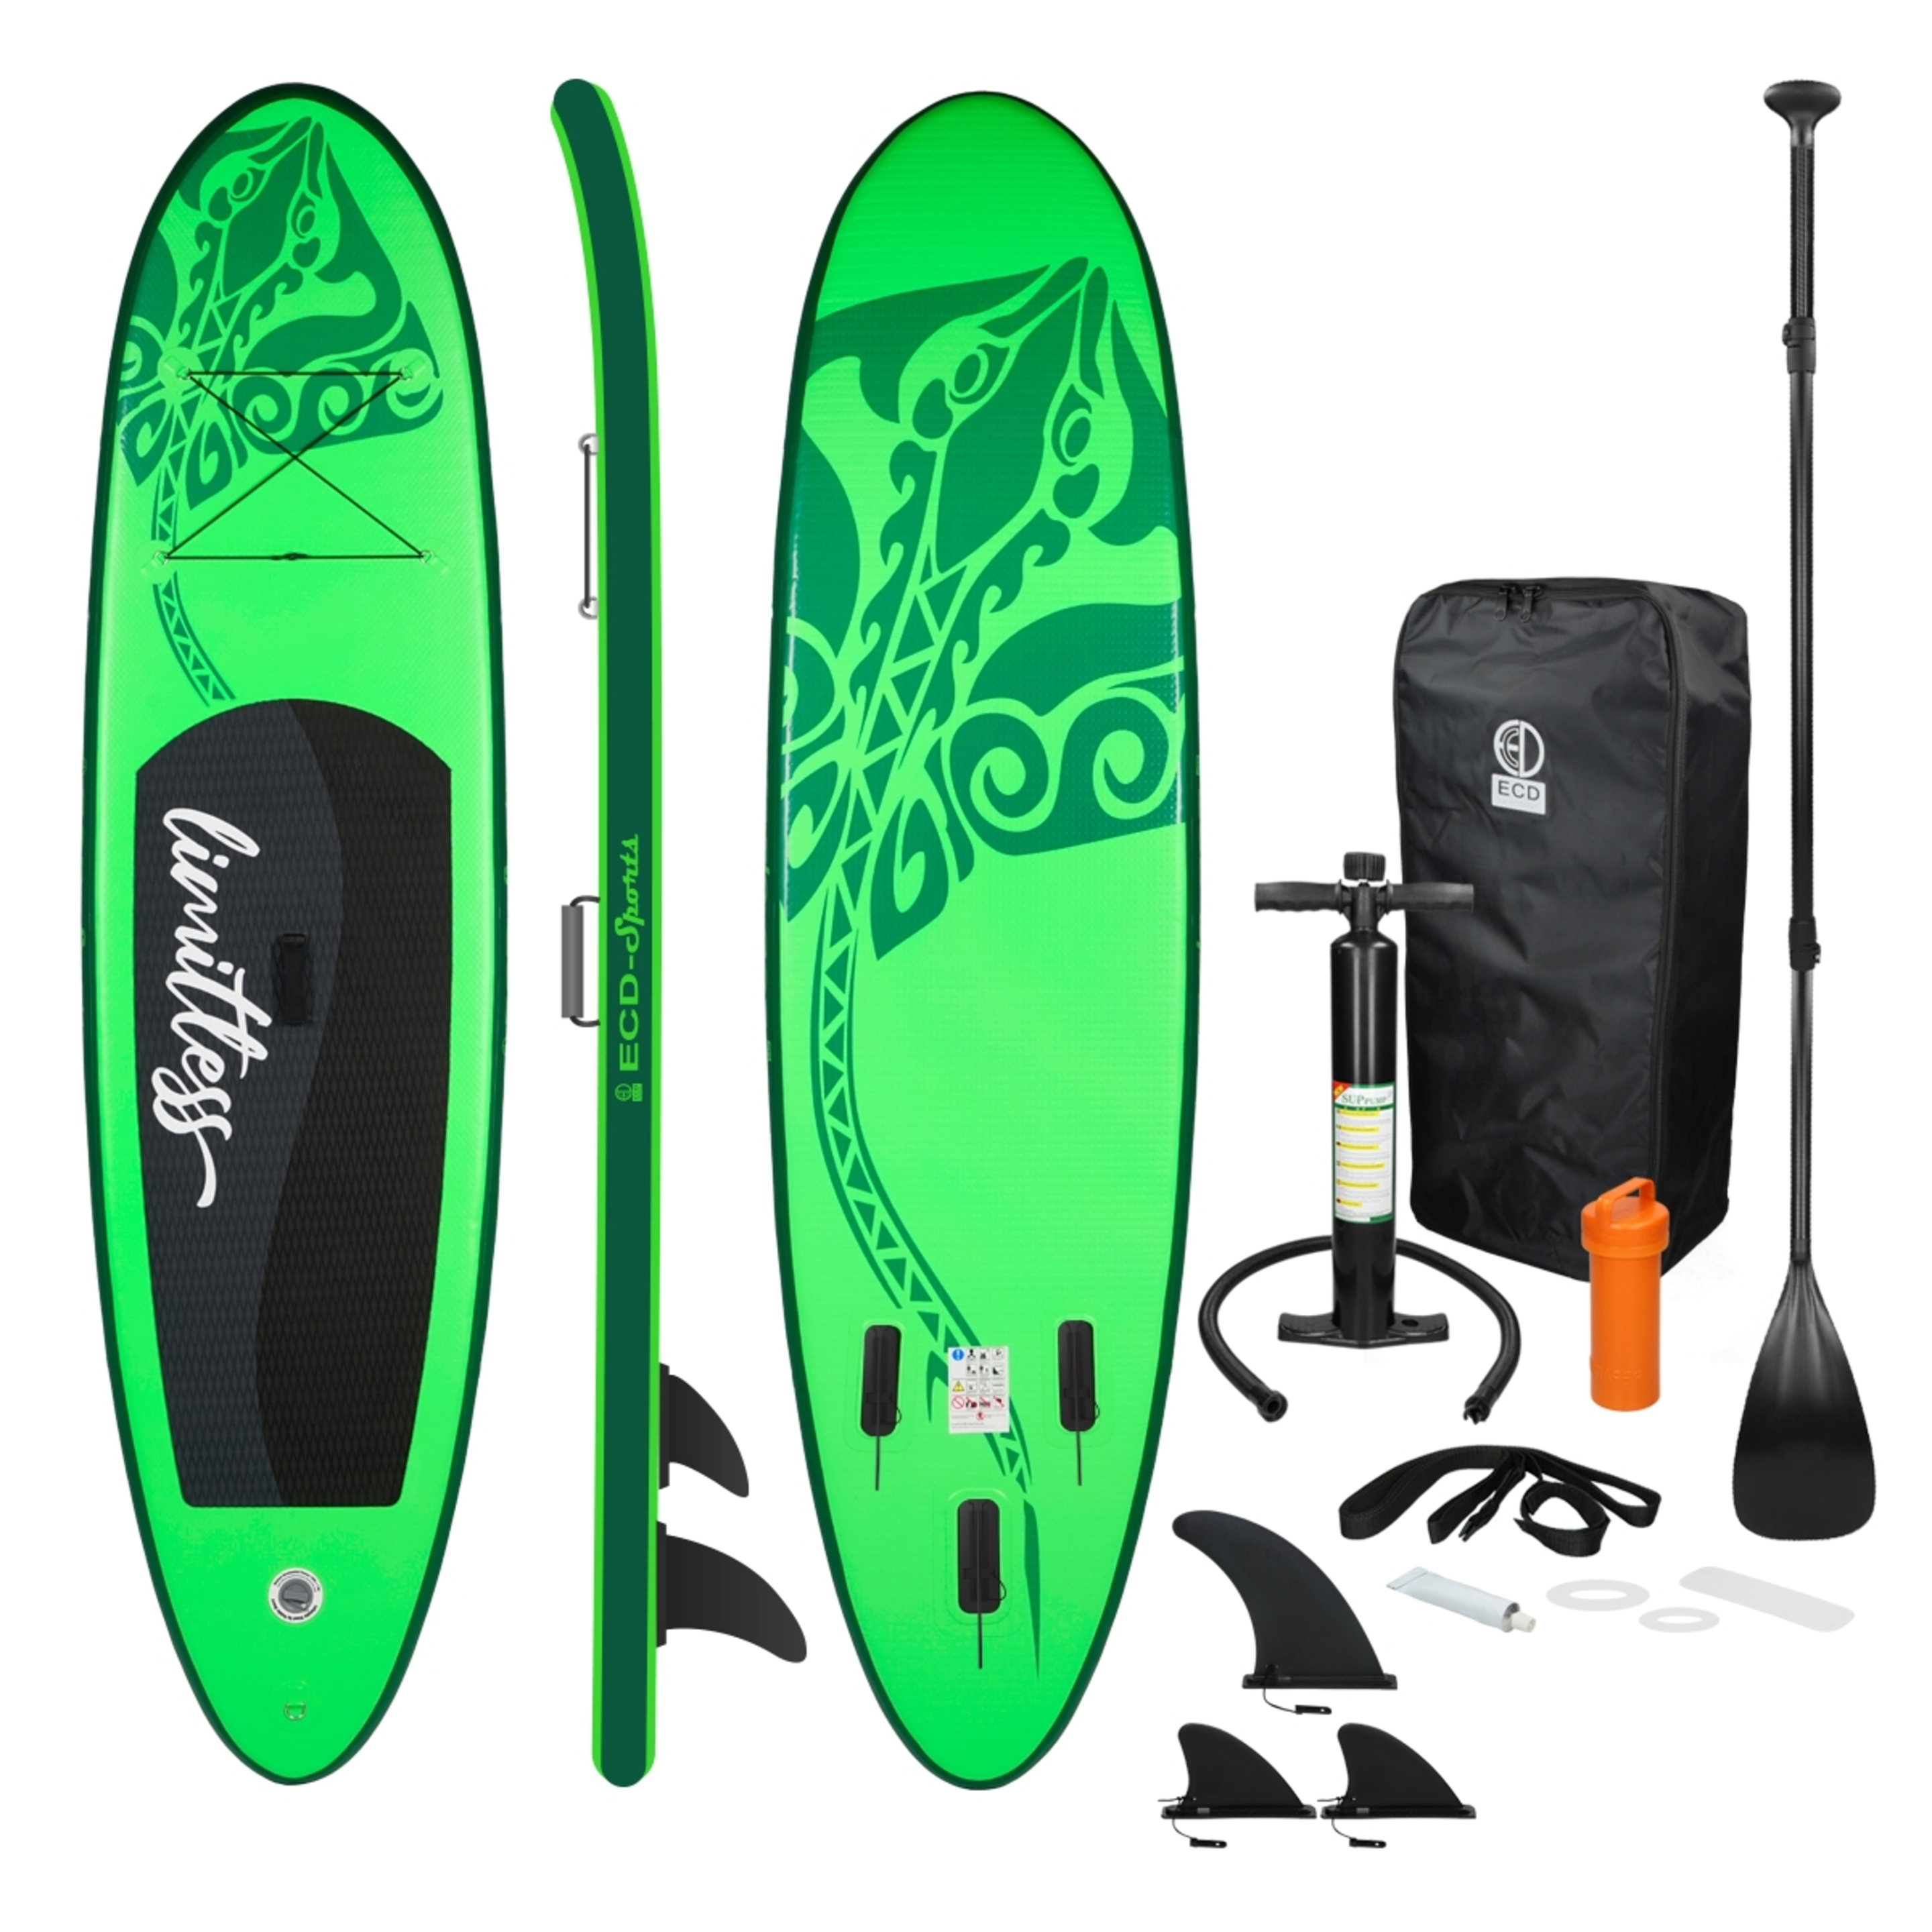 Ecd-germany Tabla Hinchable De Paddle Surf Sup Con Accesorios - Verde/Negro - Una fantástica tabla allround  MKP